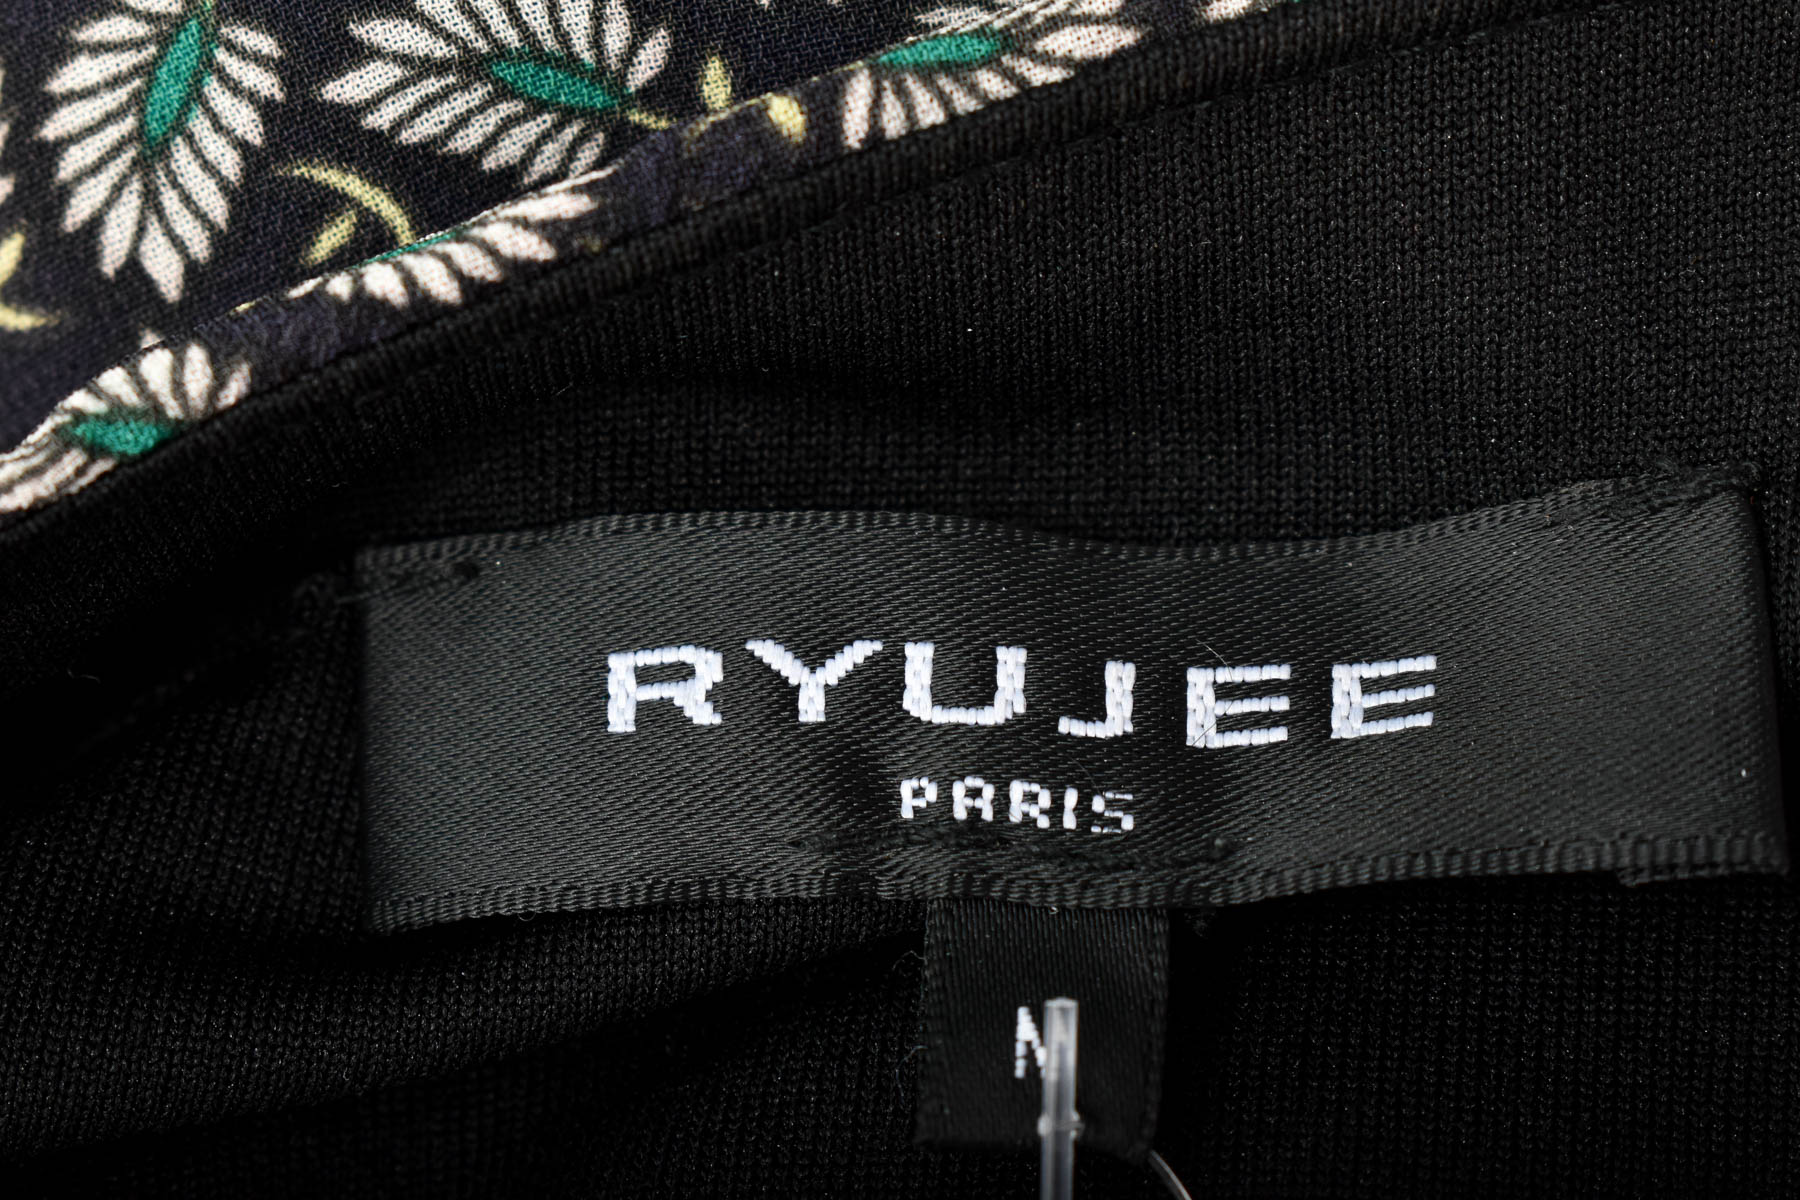 Dress - RYUJEE PARIS - 2